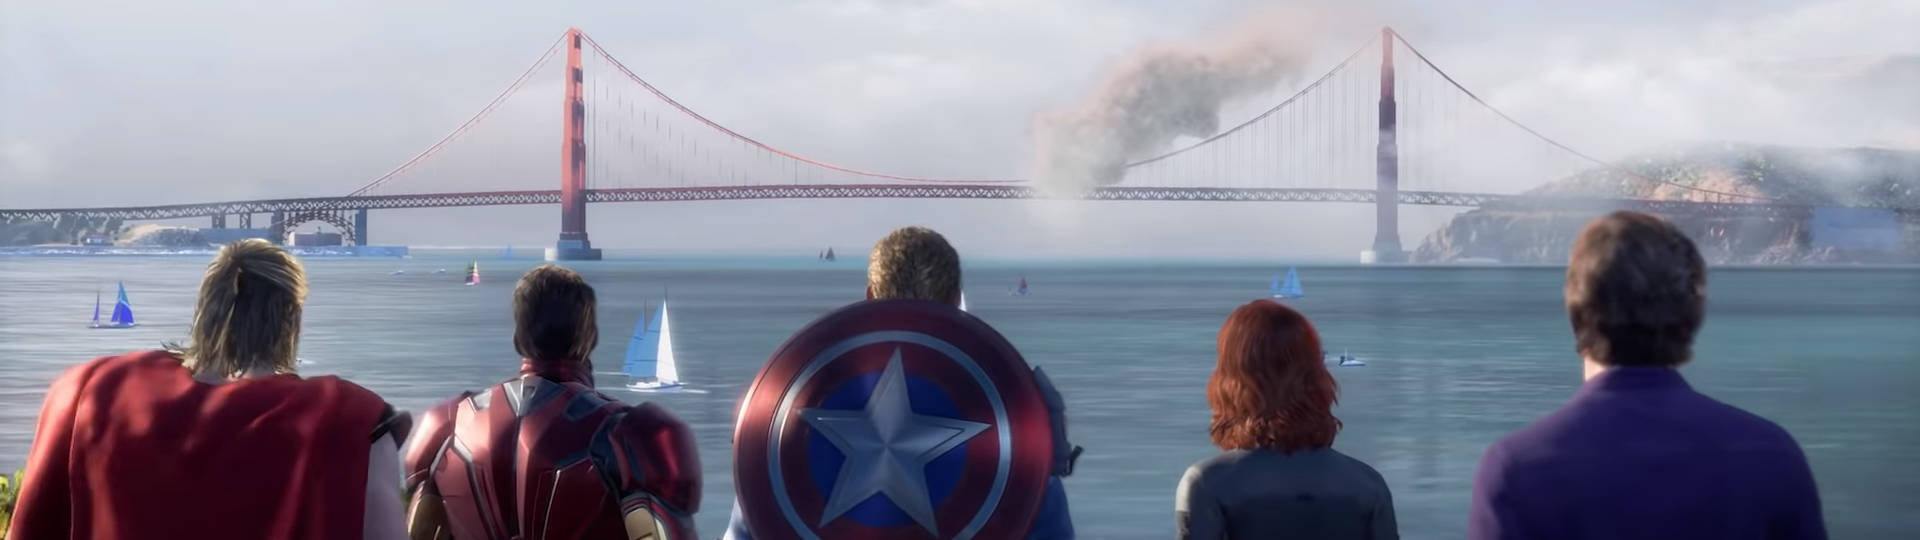 Marvel's Avengers v1.7.0 update Red Room slice